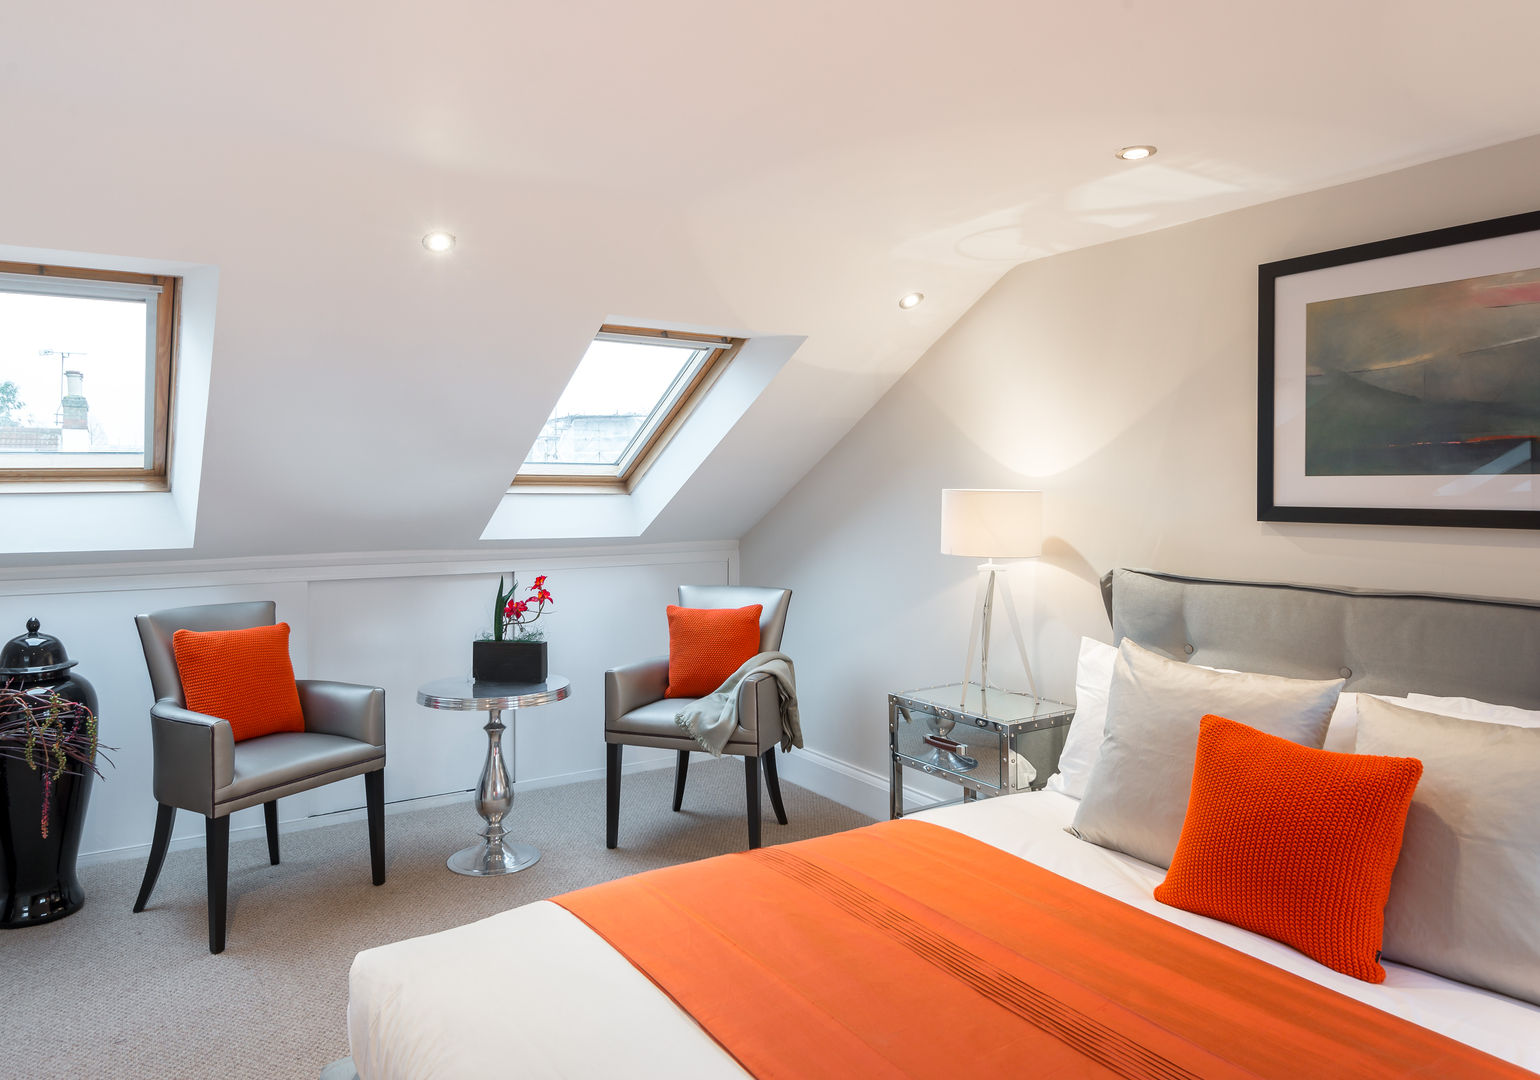 Loft : Bedroom 4 In:Style Direct Dormitorios minimalistas